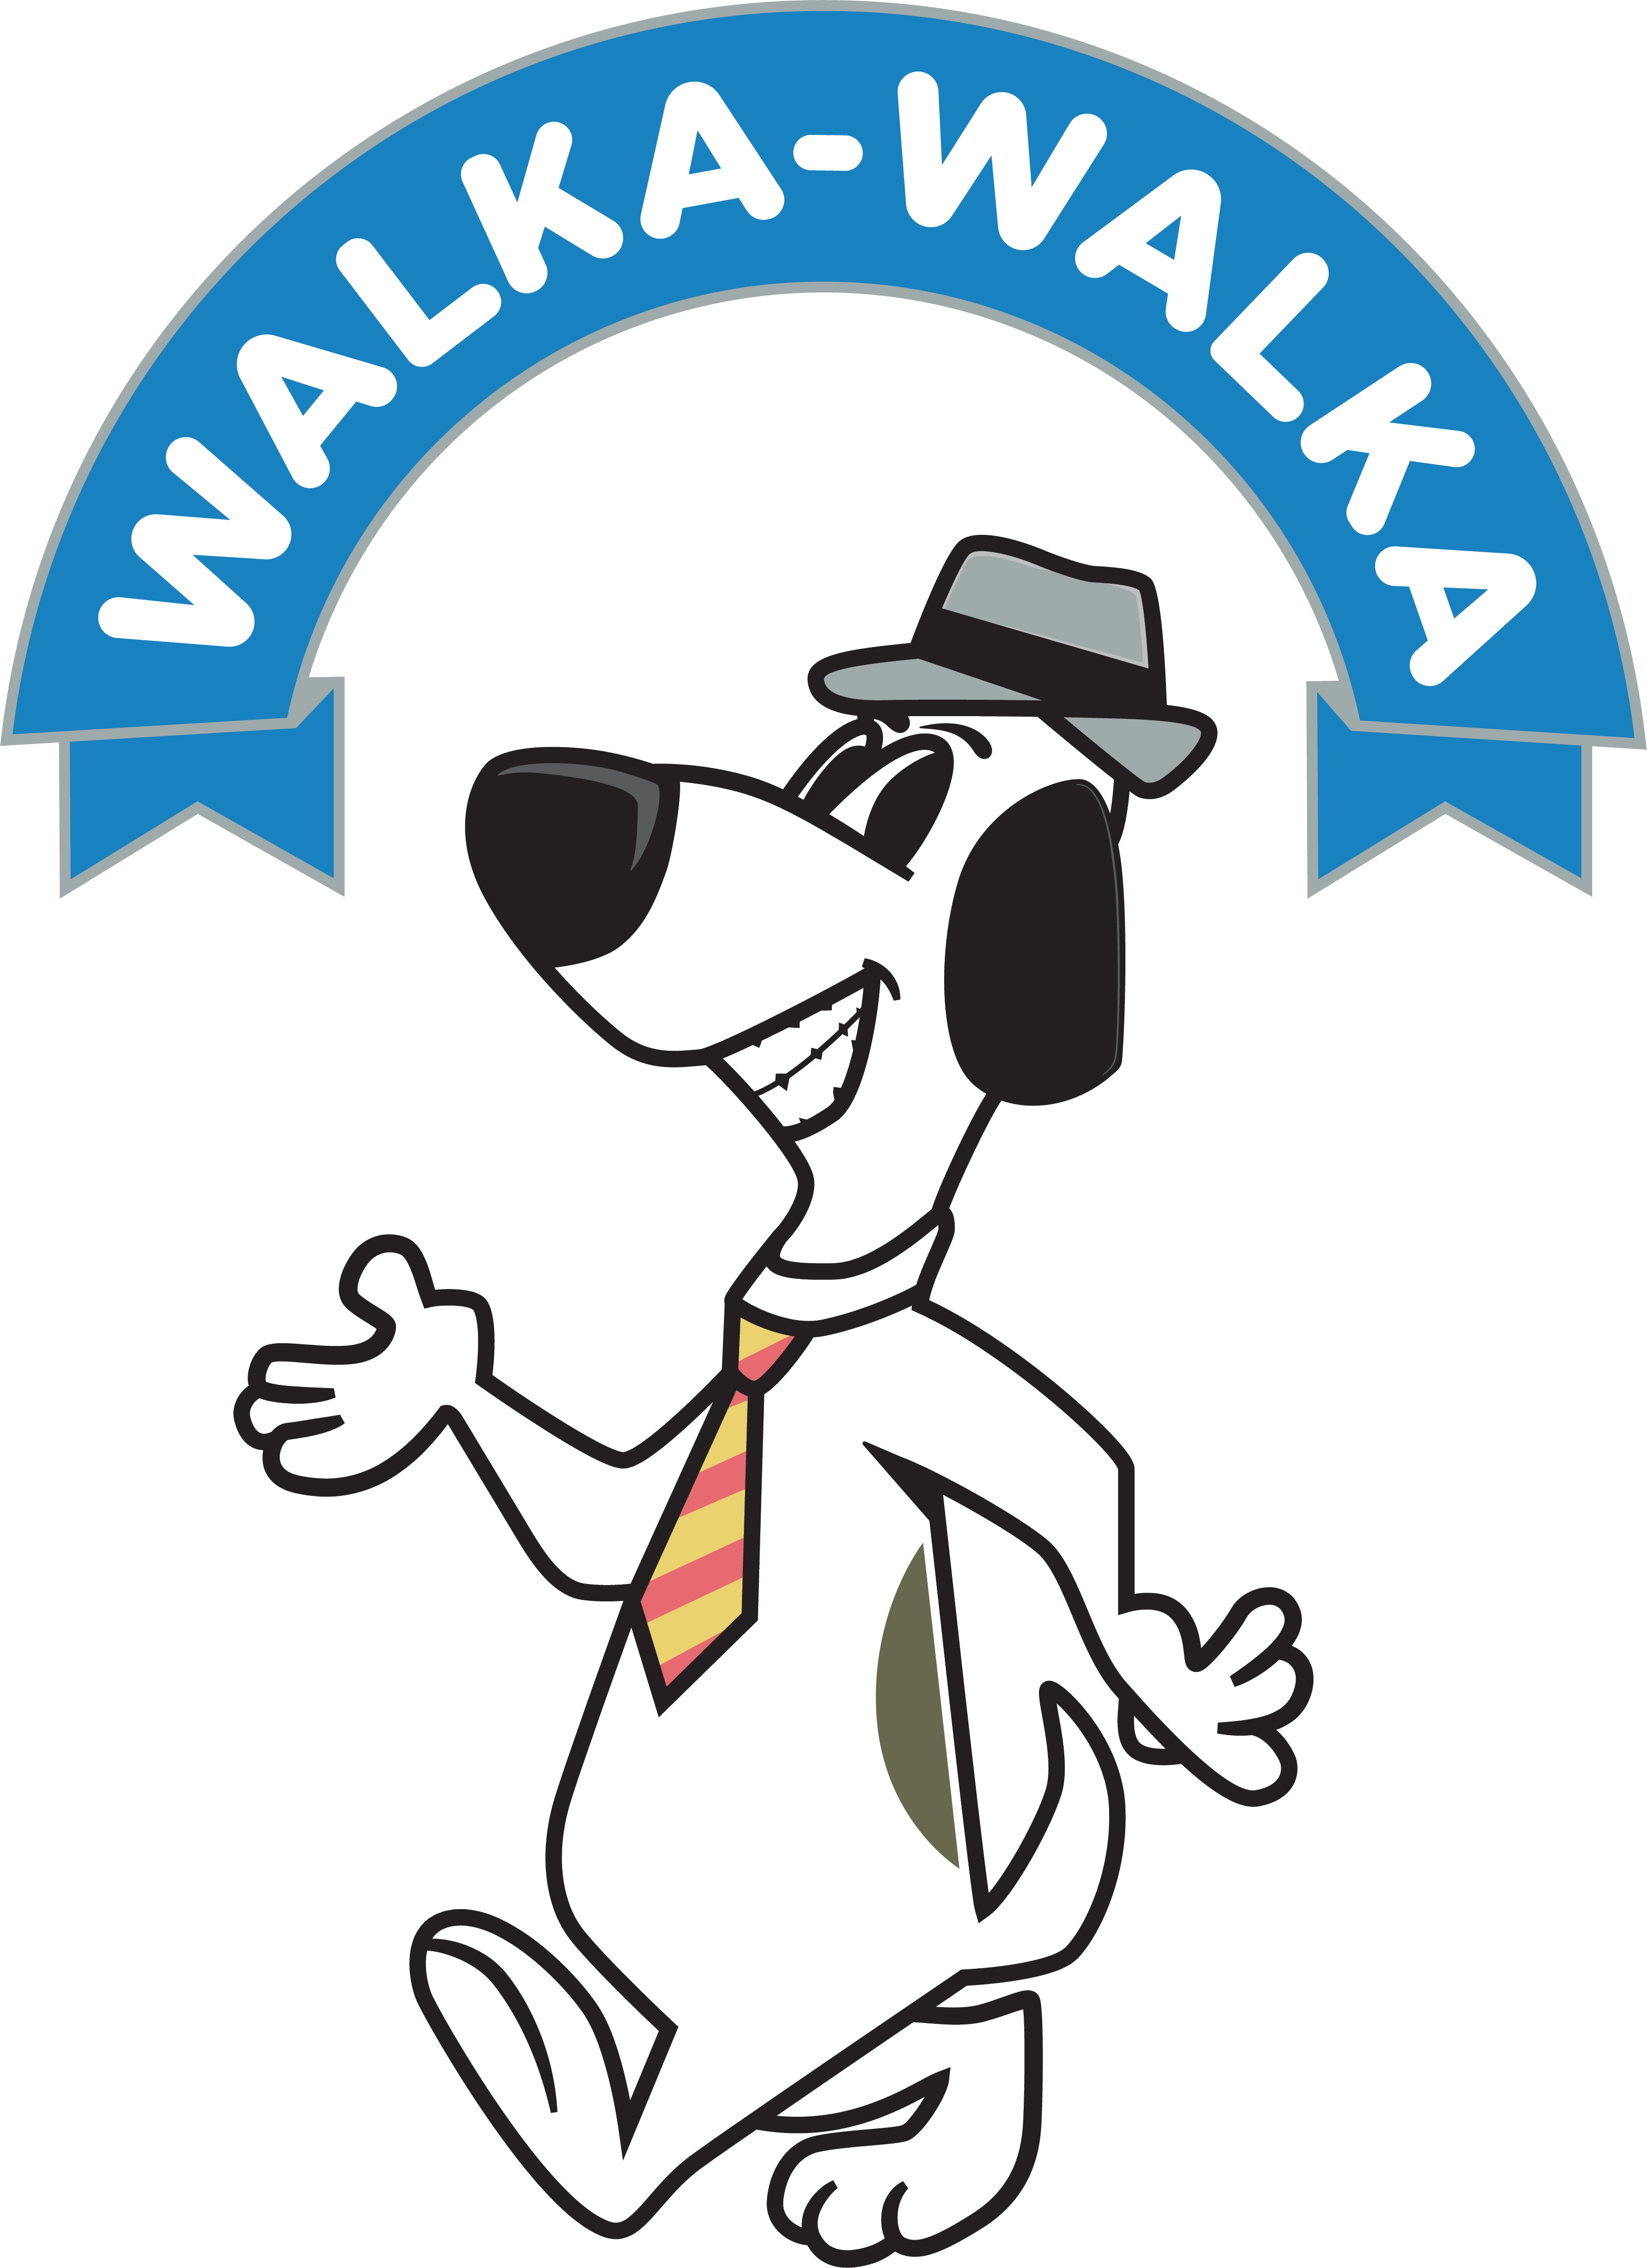 Walka-Walka - Logo